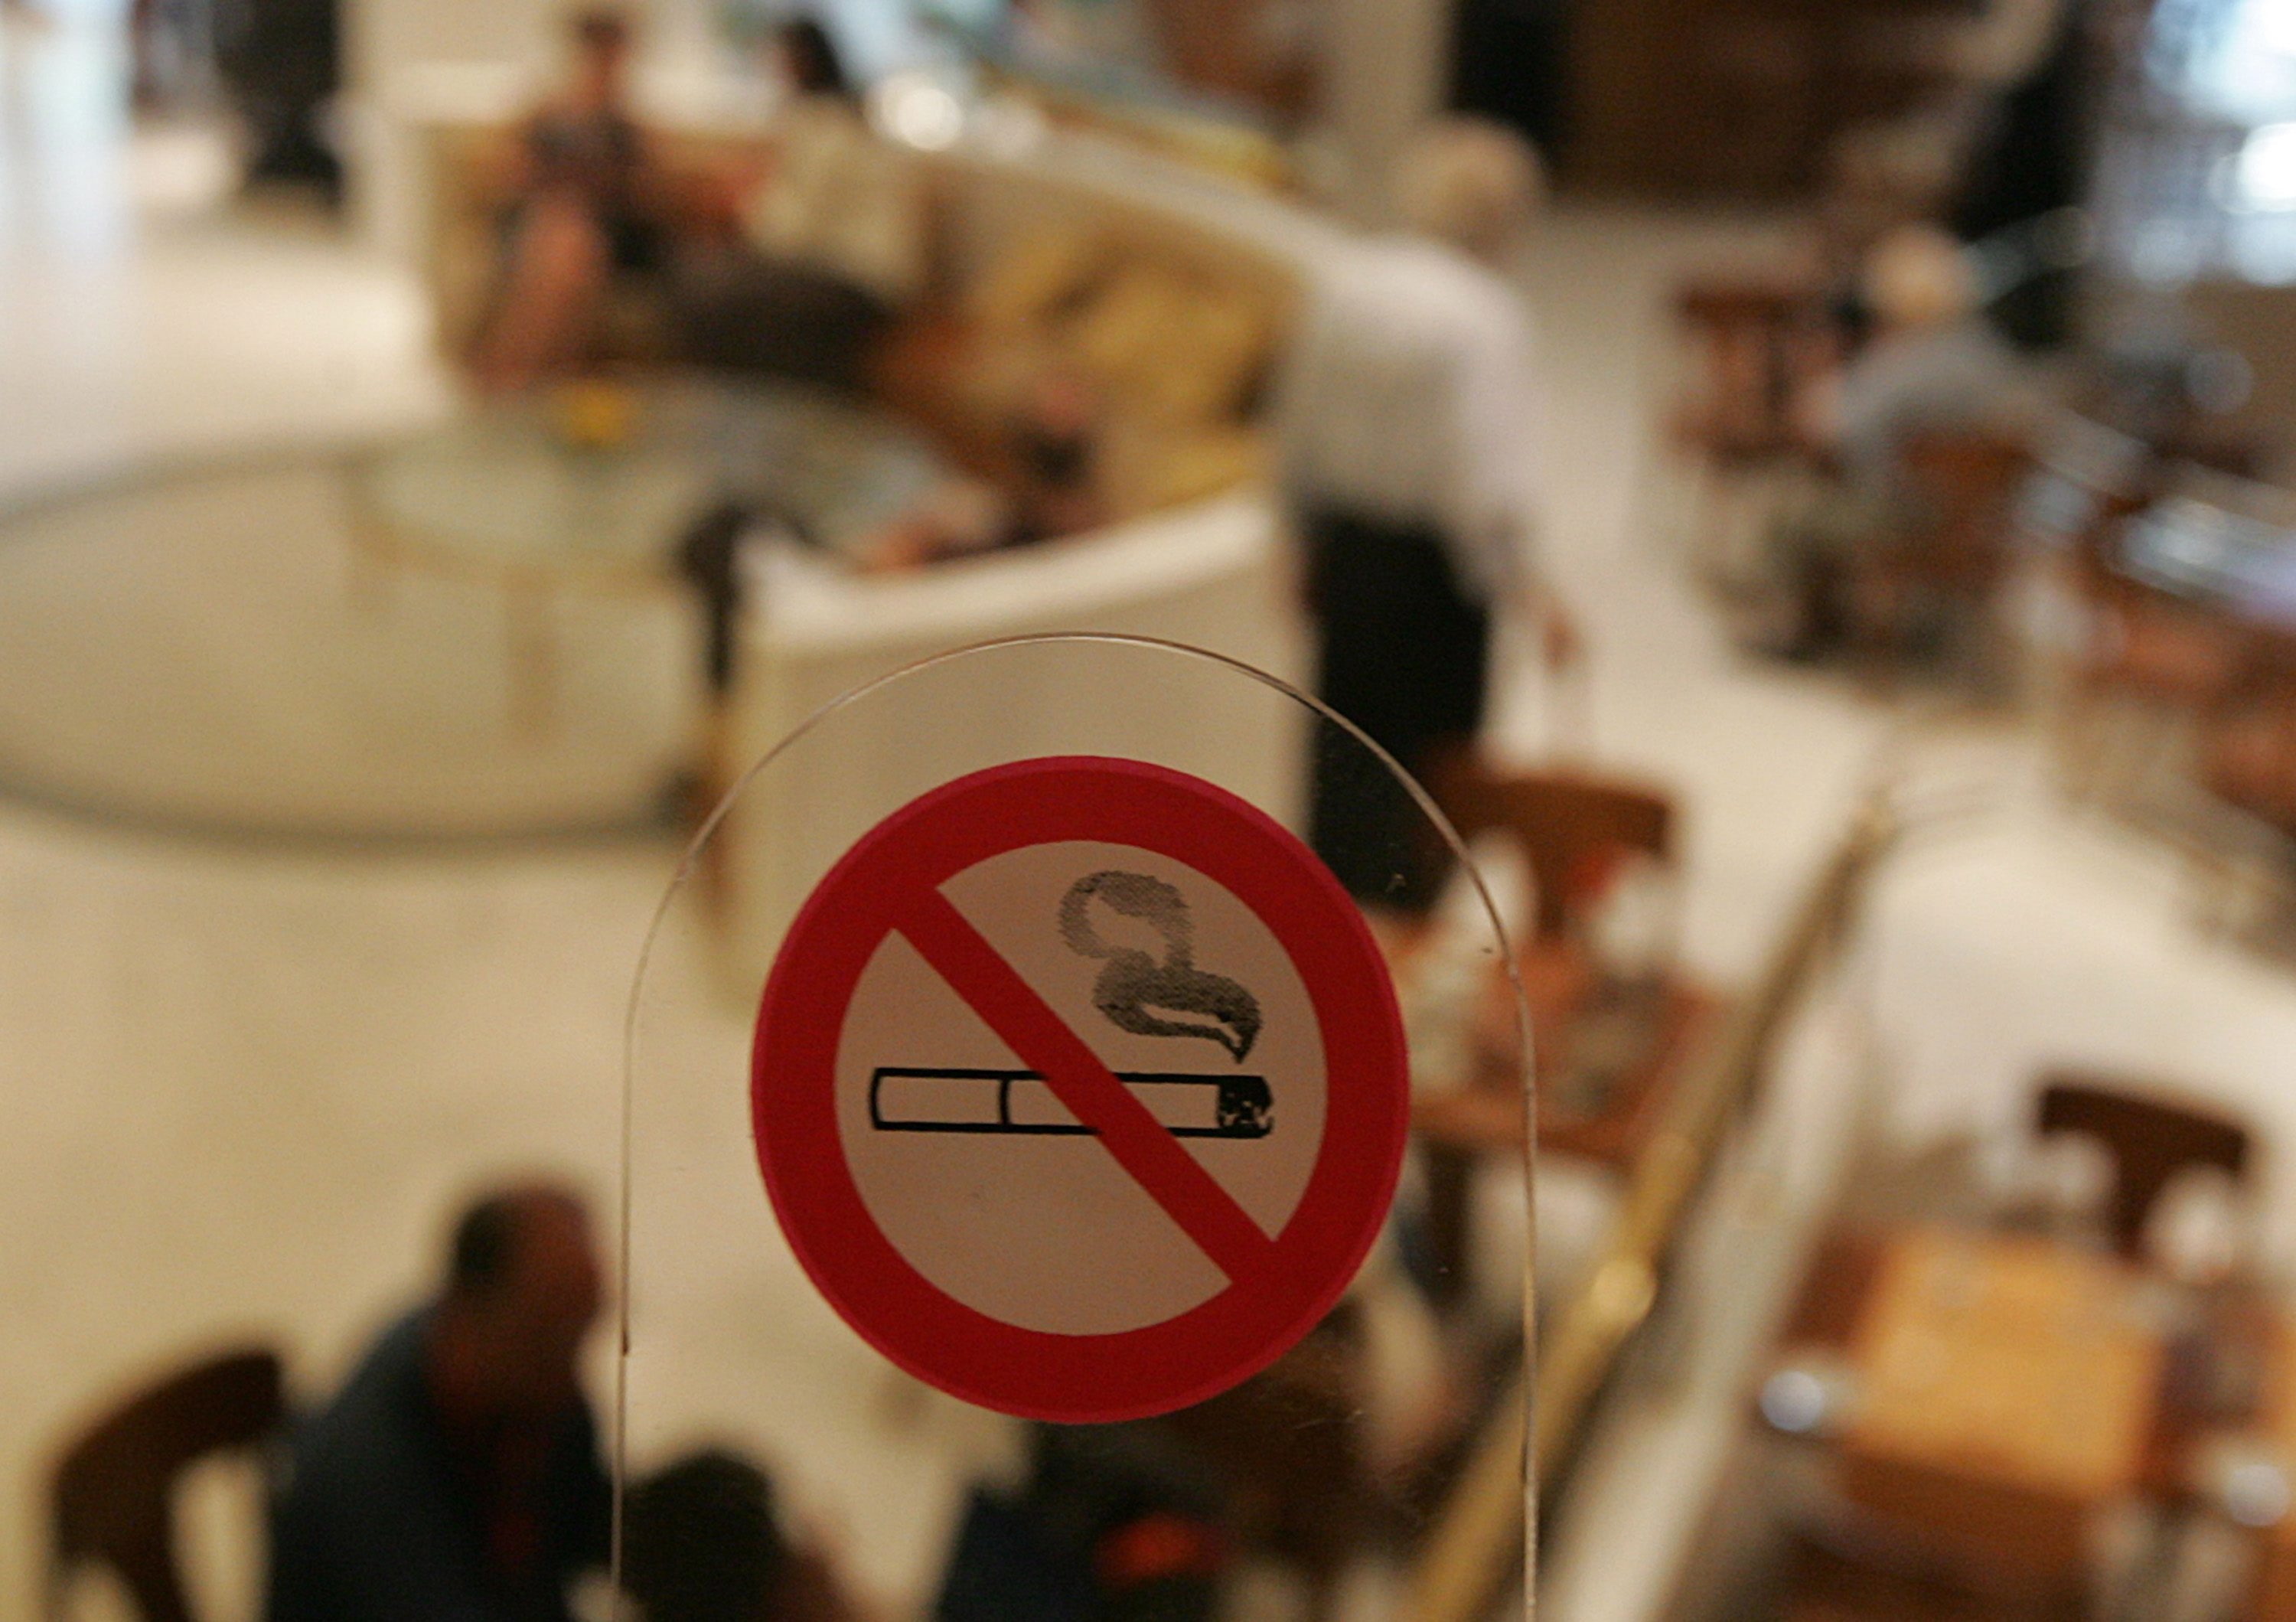 Μεσοπρόθεσμο όφελος έχει ο αντικαπνιστικός νόμος ως προς τη διακοπή του καπνίσματος